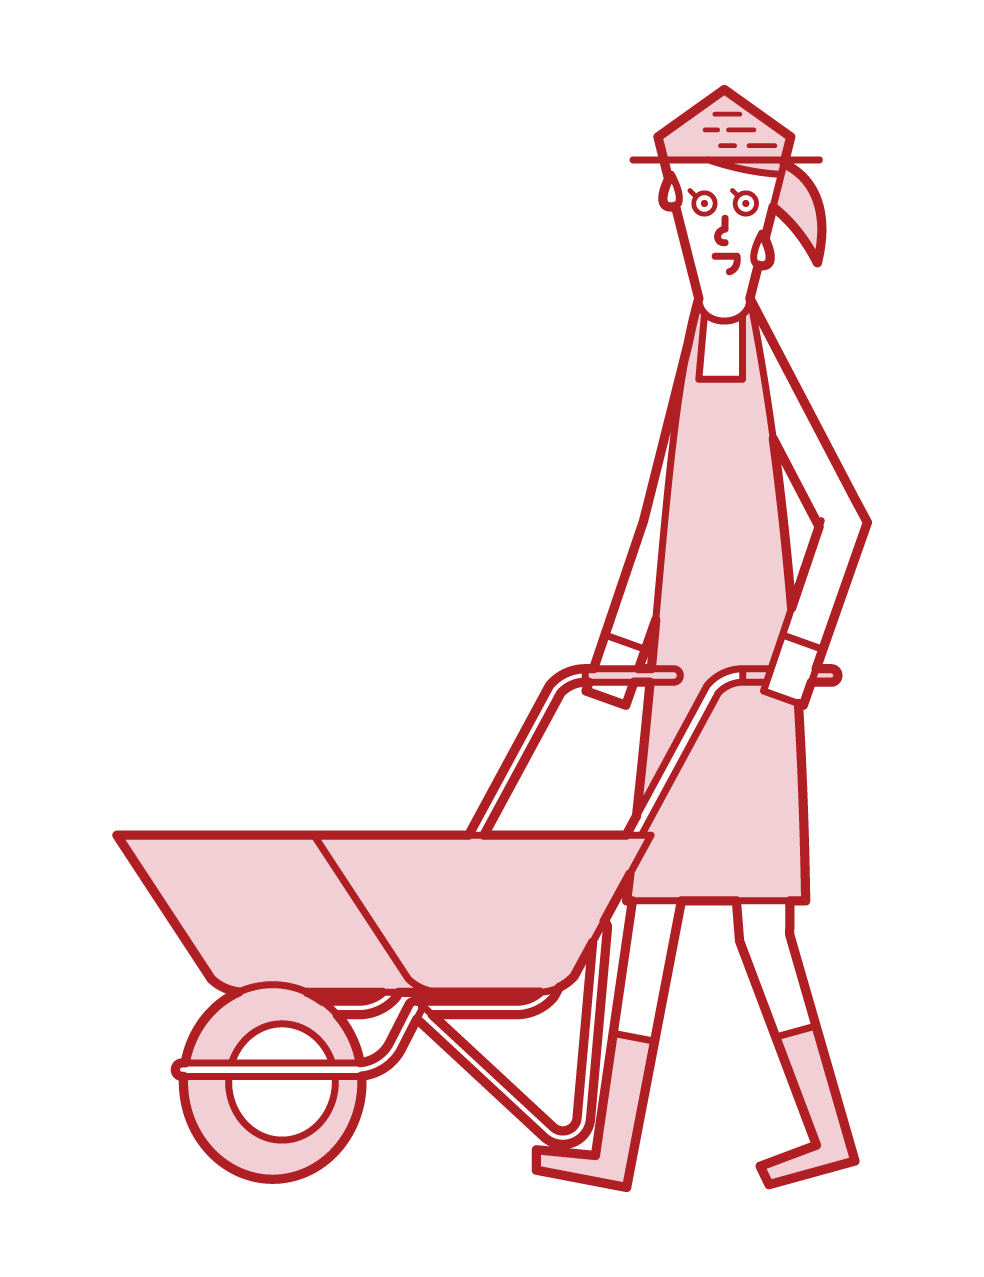 손으로 외발 자전거를 밀고있는 사람 (여성)의 그림